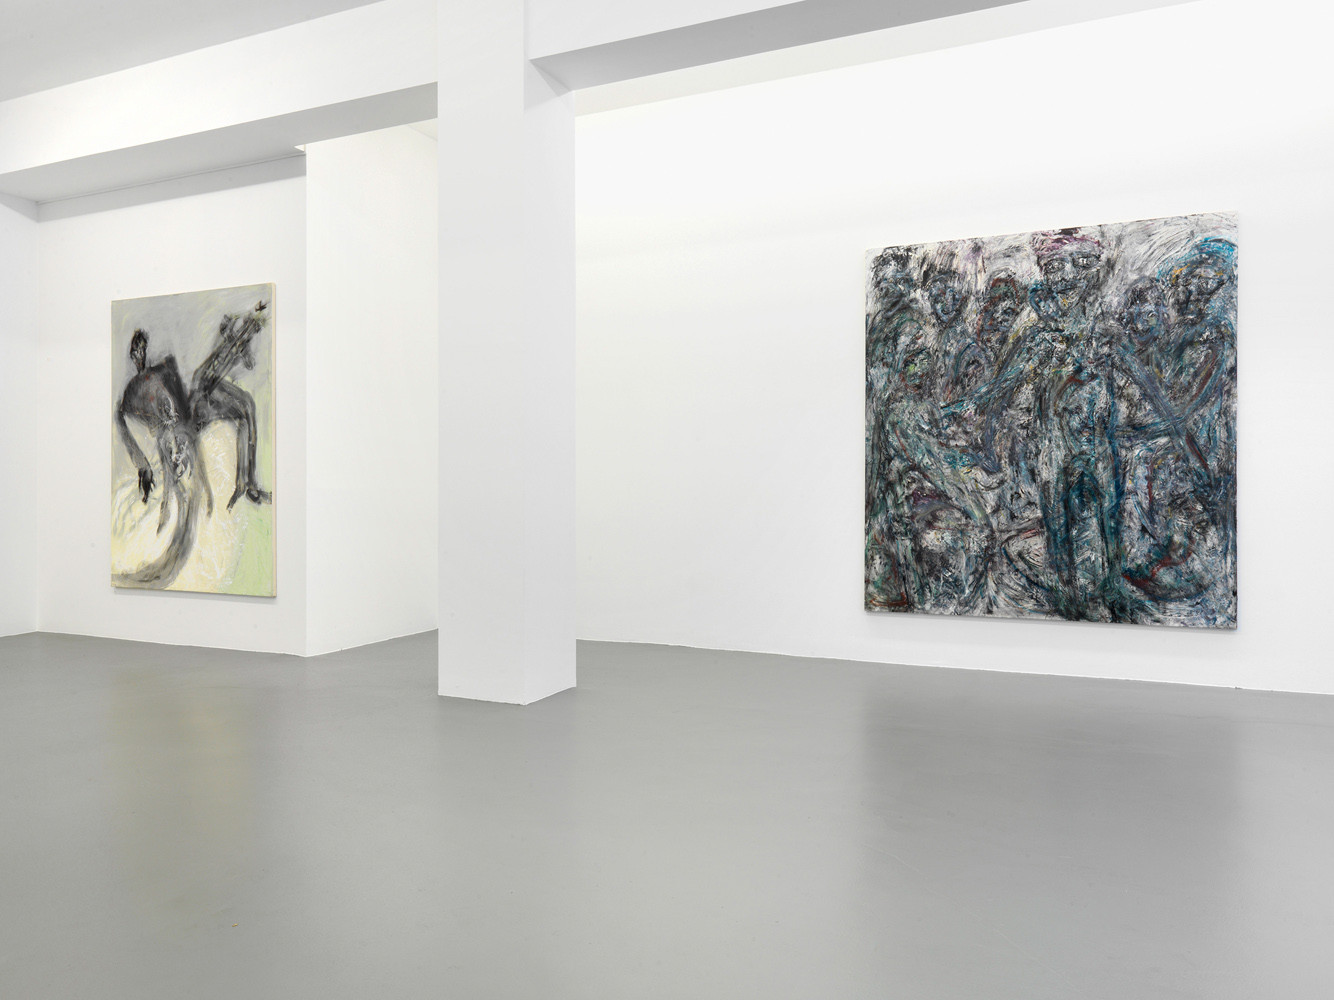 Martin Disler, ‘Malerei’, Installationsansicht, Buchmann Galerie, 2014